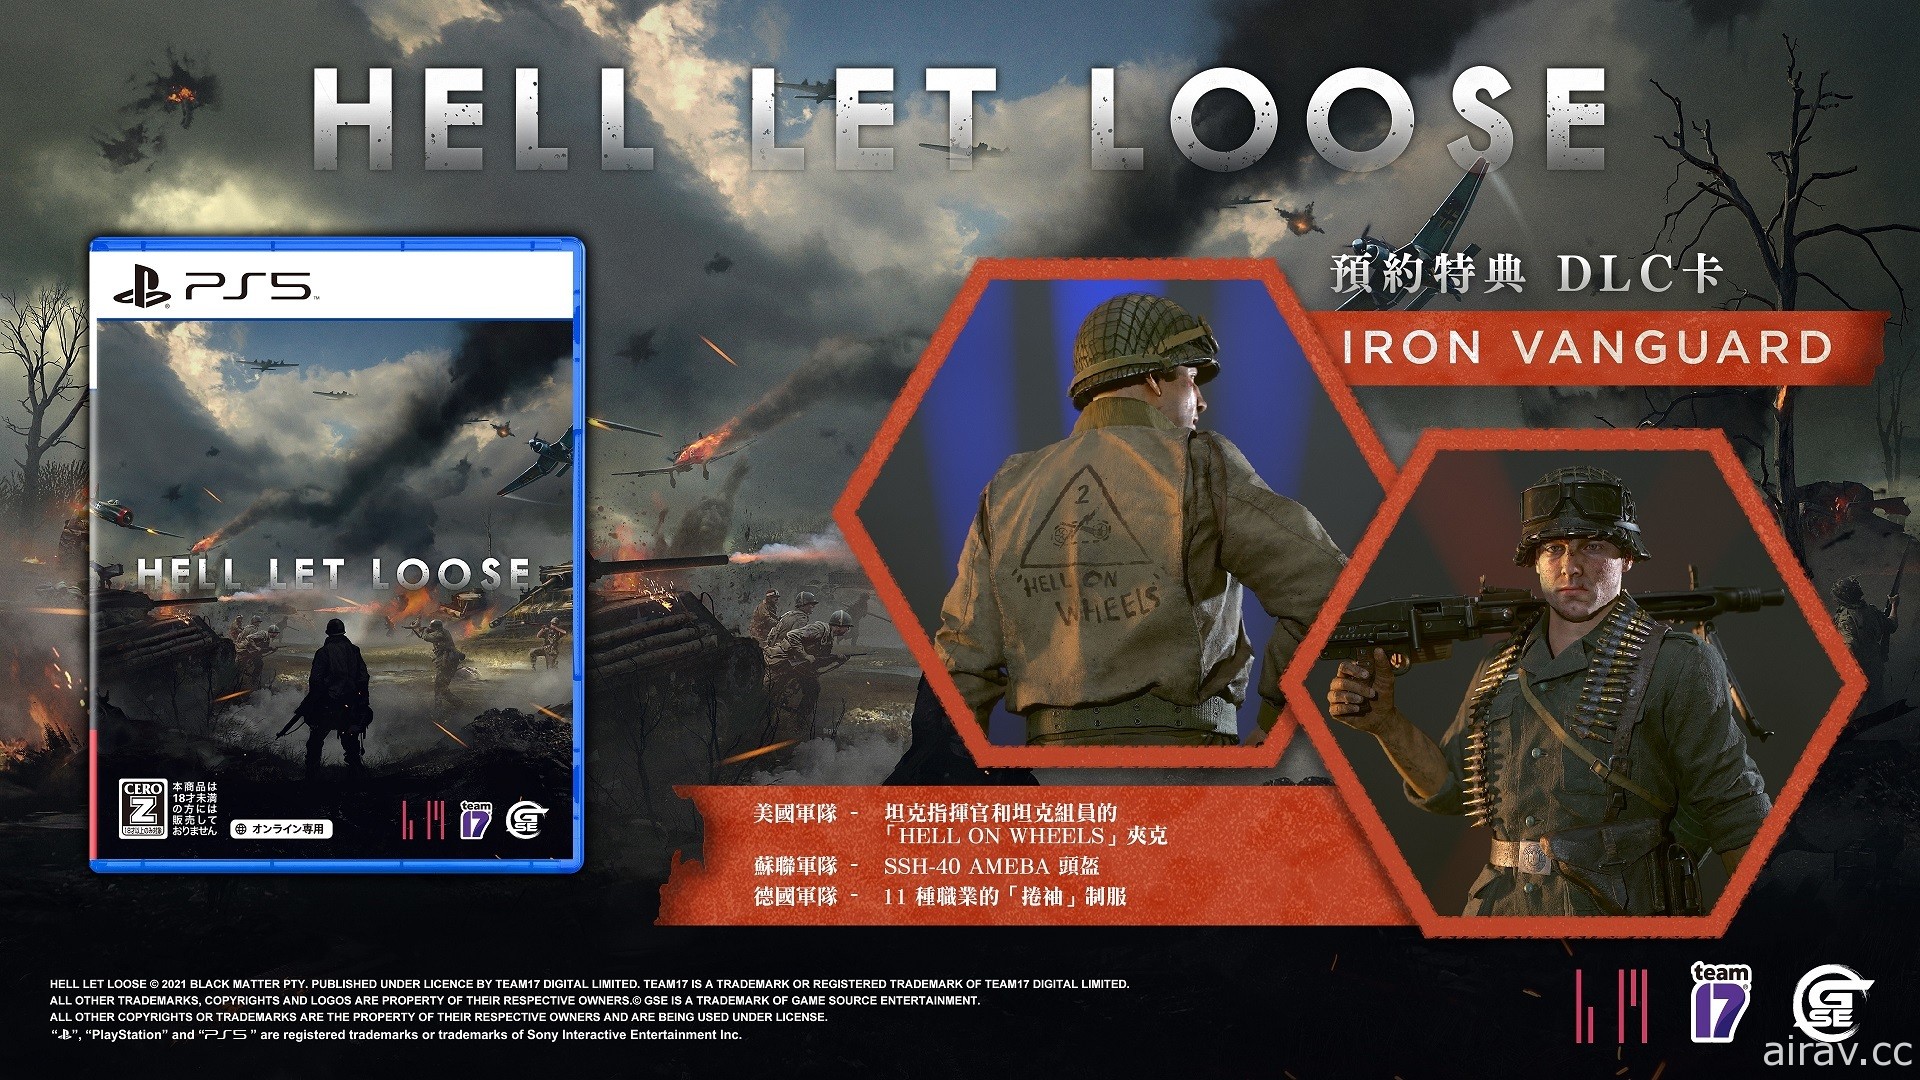 投身二戰生死搏鬥 百人連線對戰遊戲《集火地獄》今冬登陸 PS5 平台